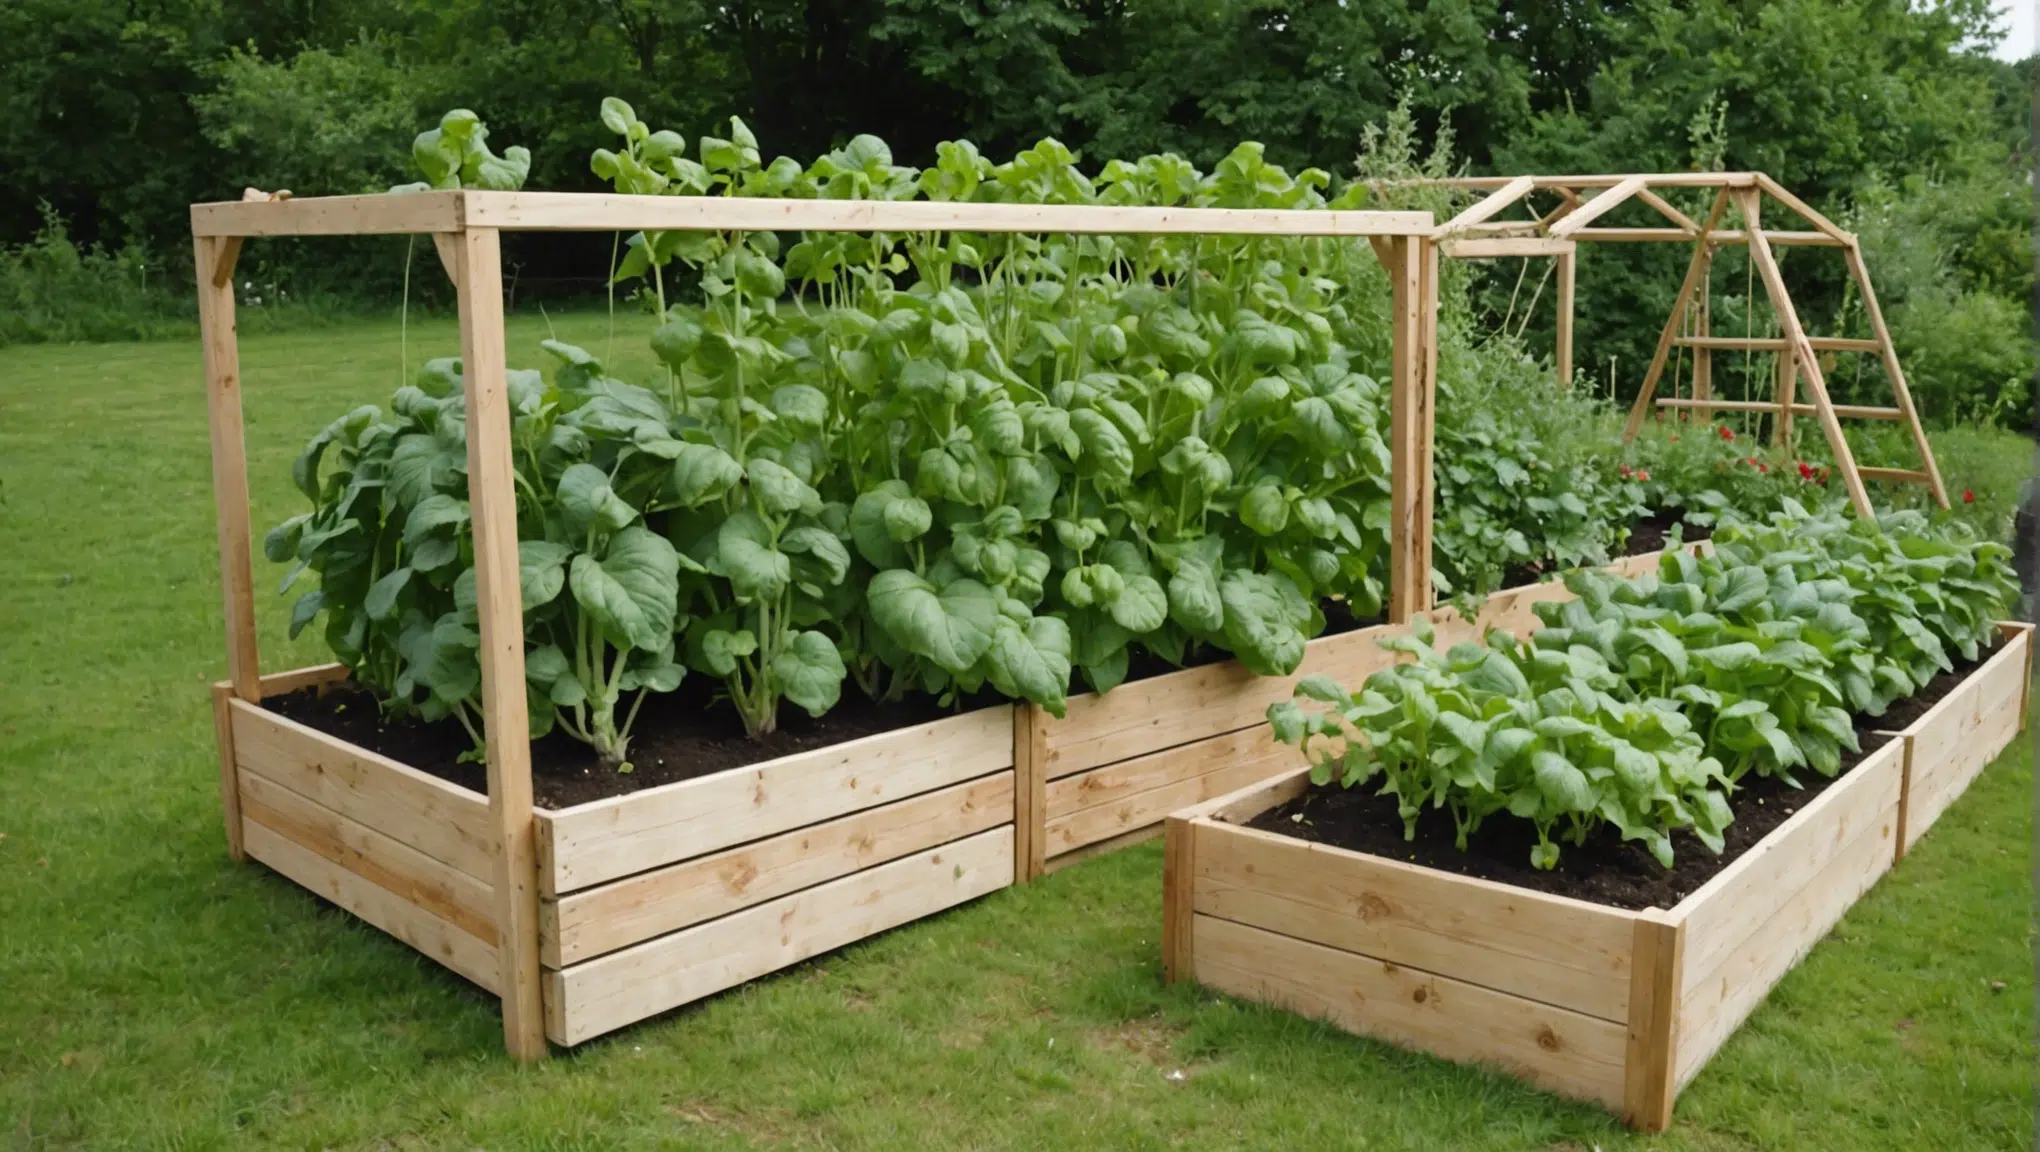 découvrez des idées ingénieuses pour aménager votre jardin potager et cultiver vos propres fruits et légumes de manière astucieuse!